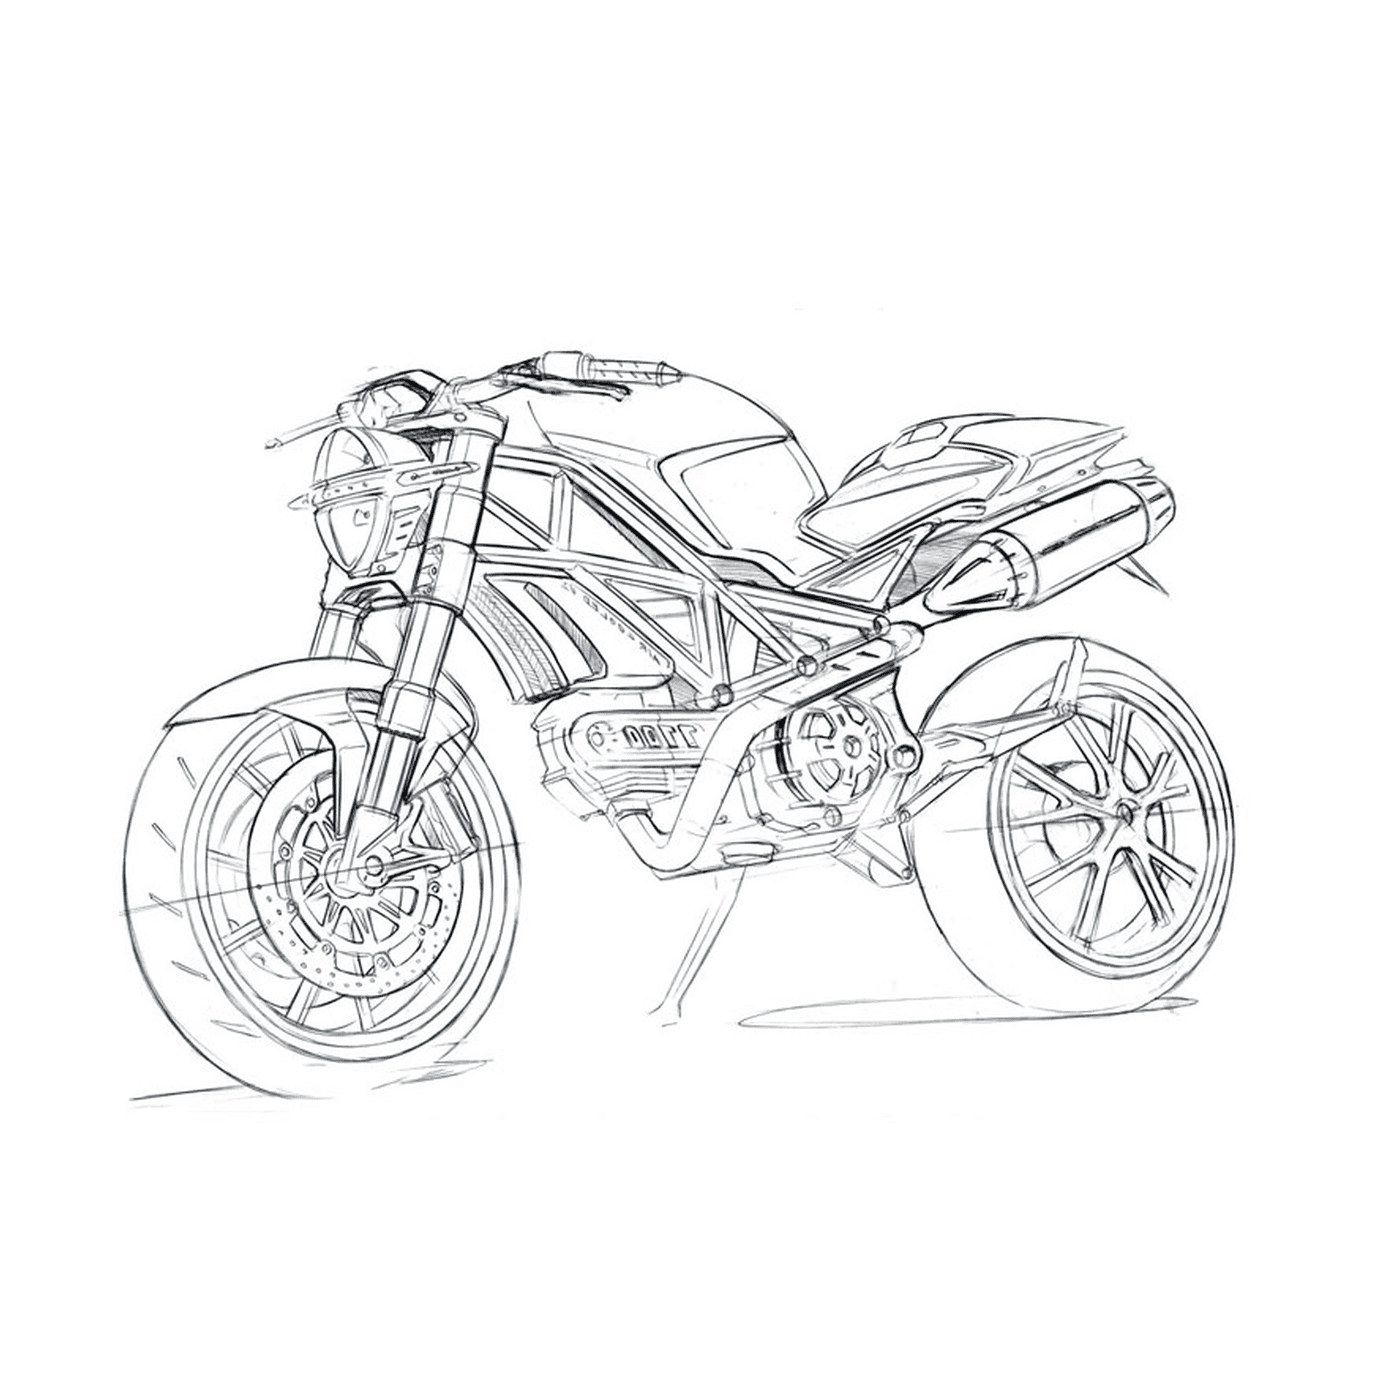  Motocicleta Ducati sobre fondo blanco 